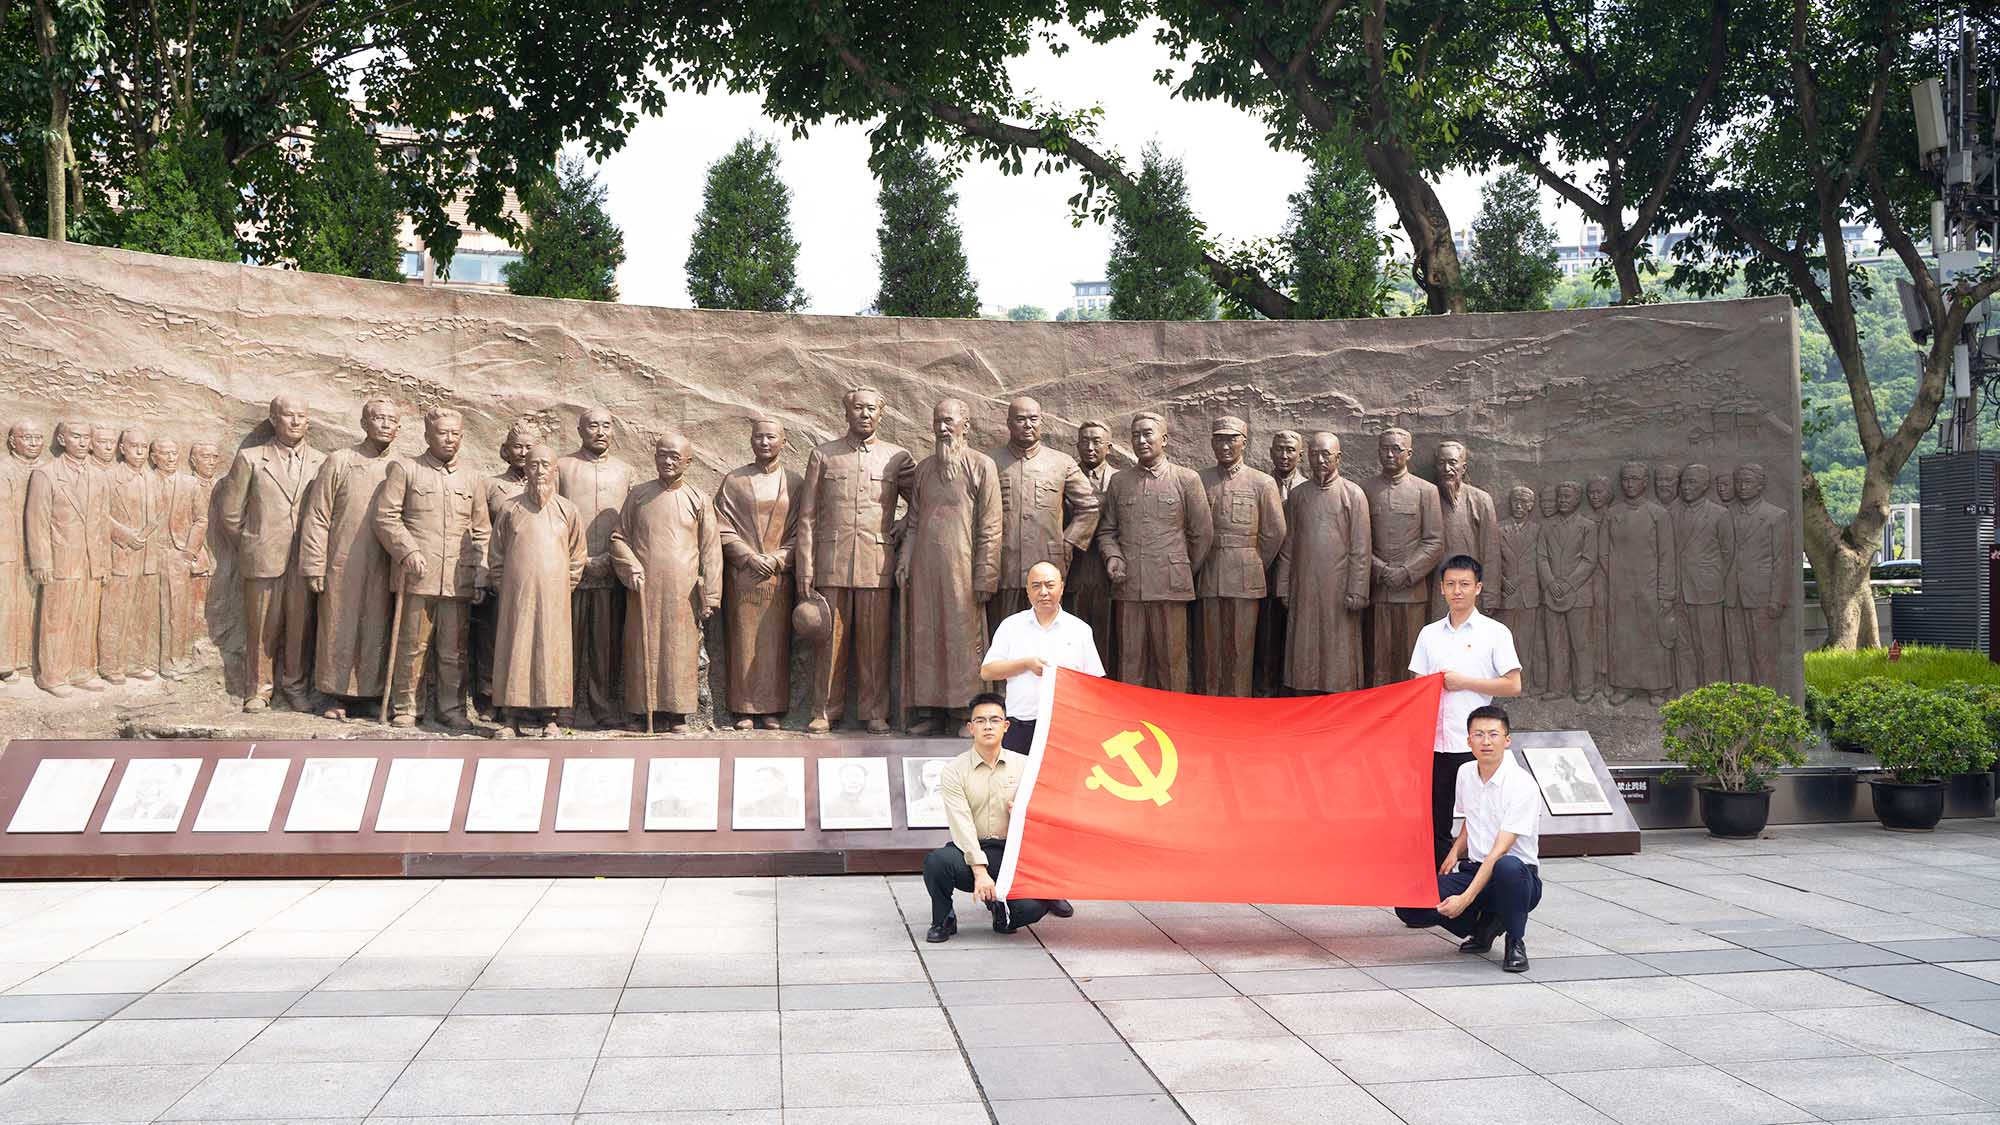 团员参观红岩革命纪念馆